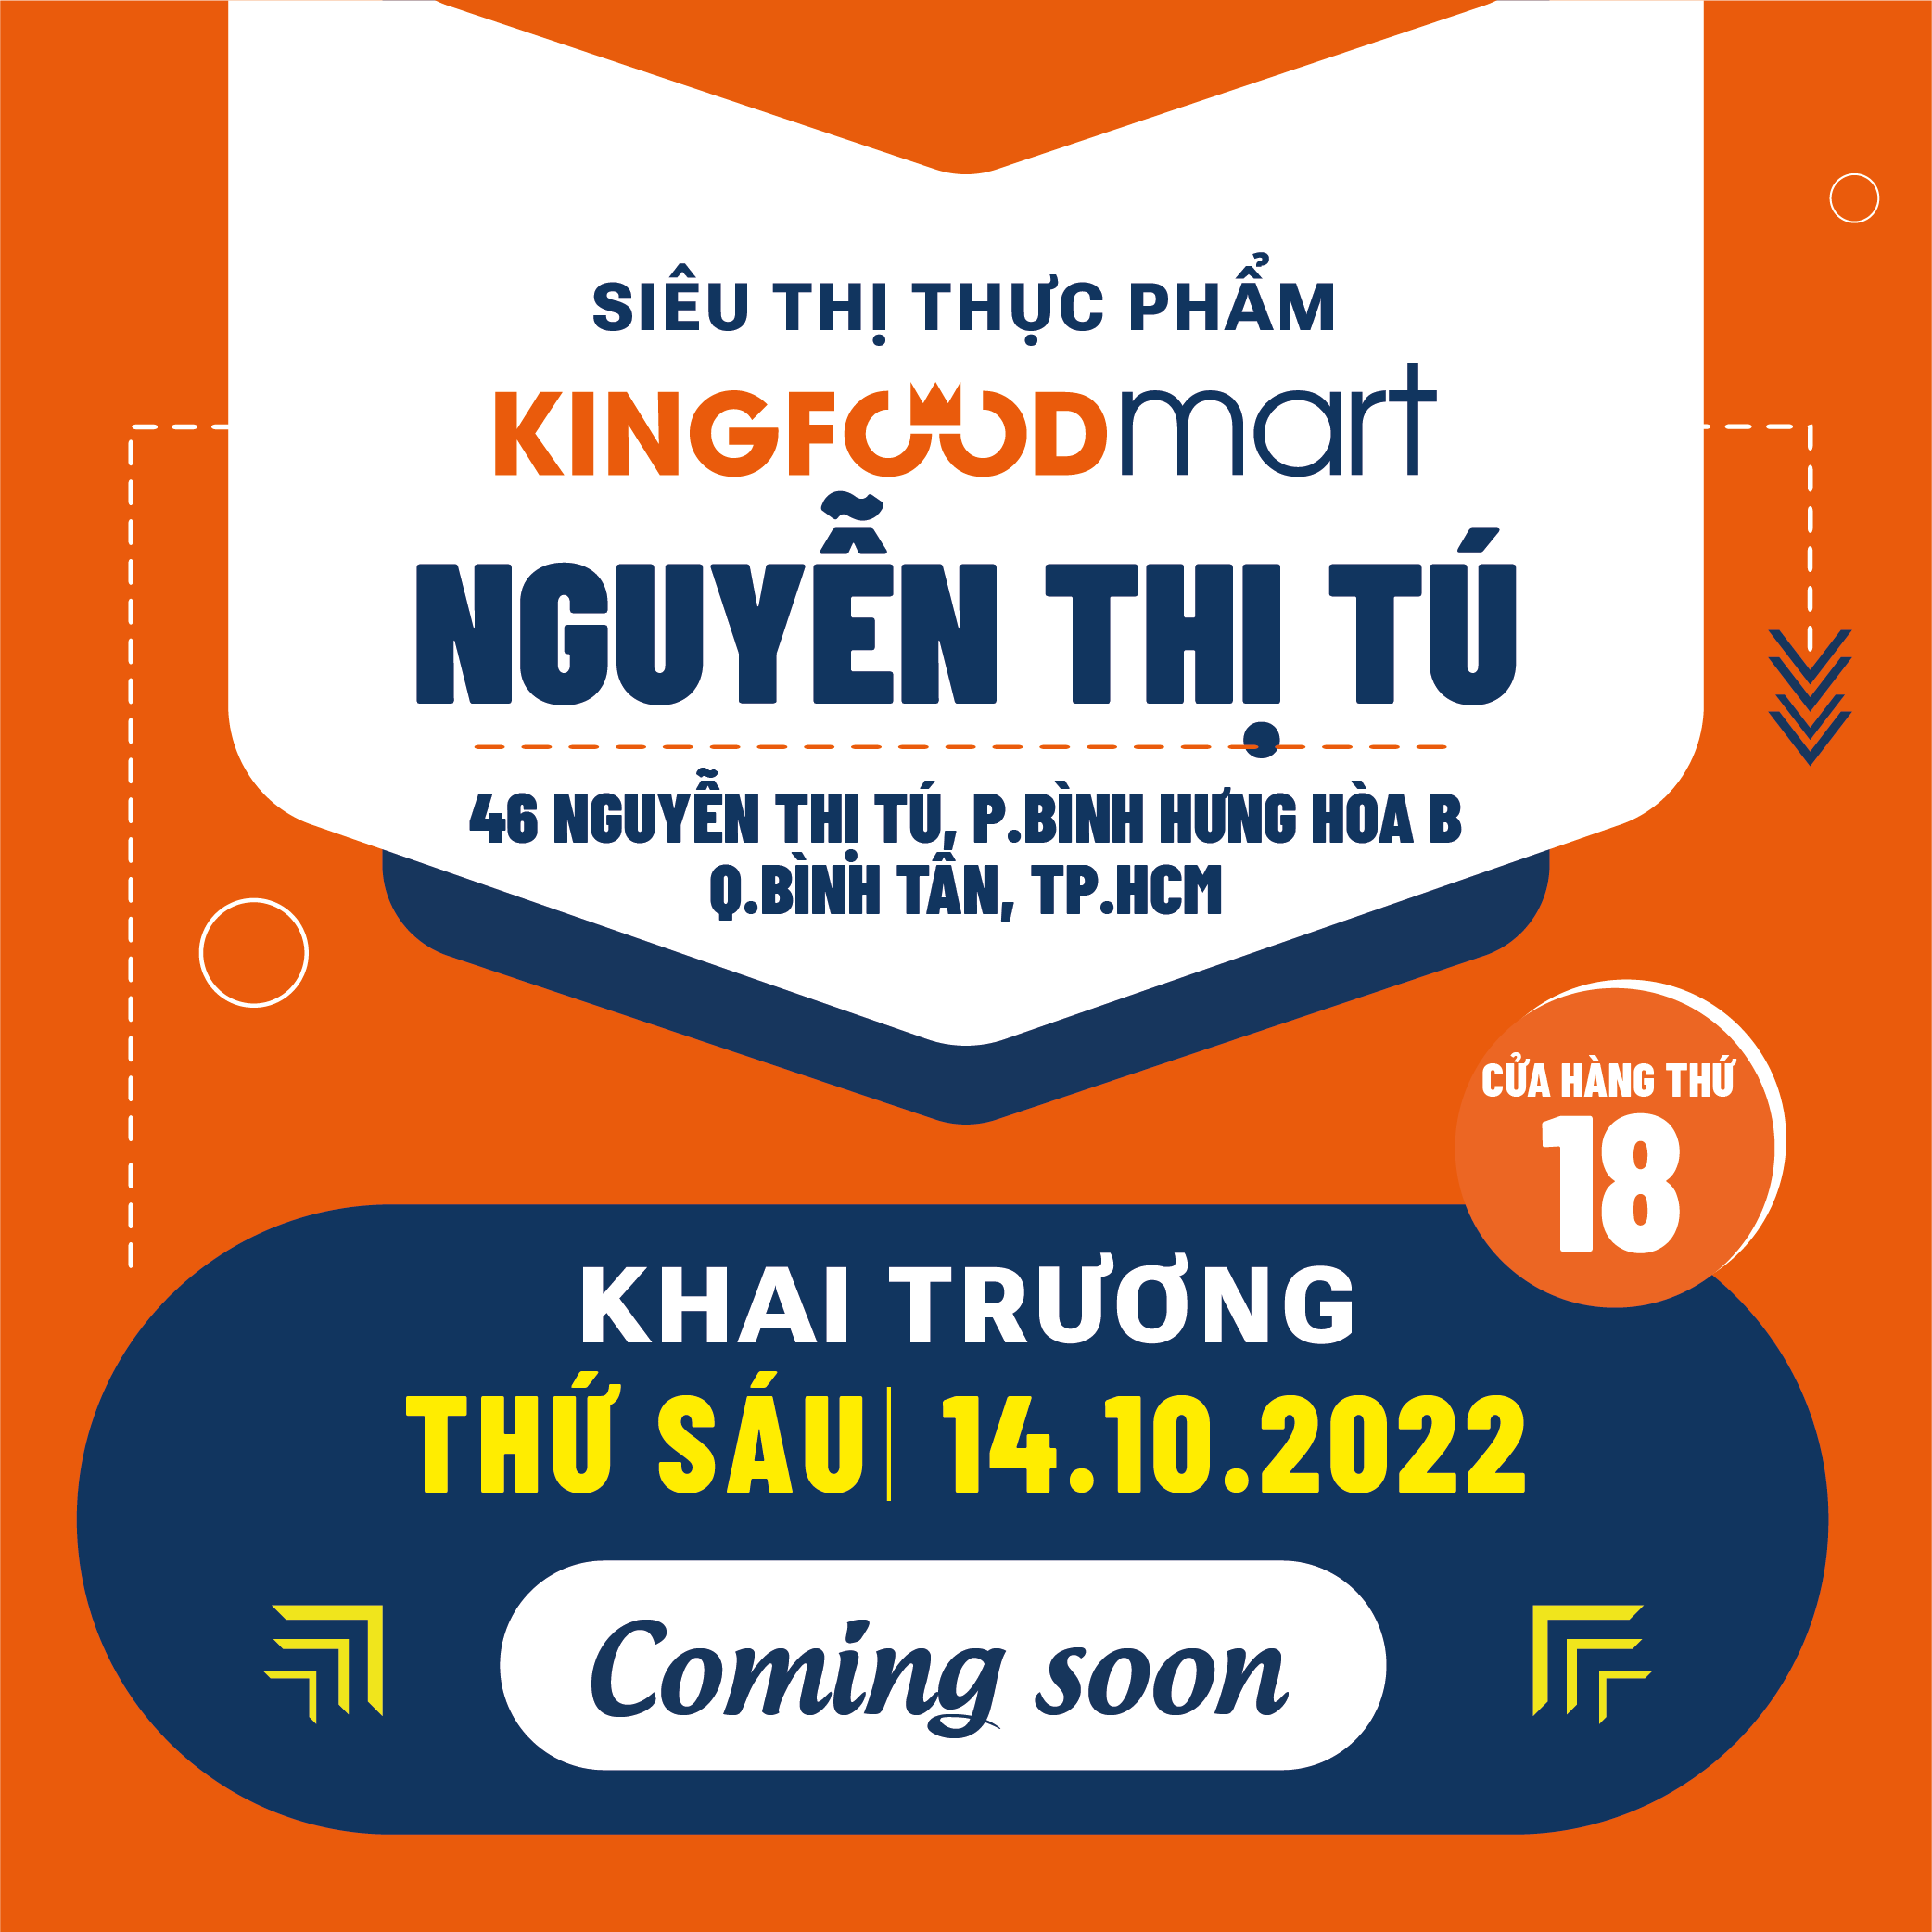 Hello Bình Tân! Đón Chào Kingfoodmart Nguyễn Thị Tú!